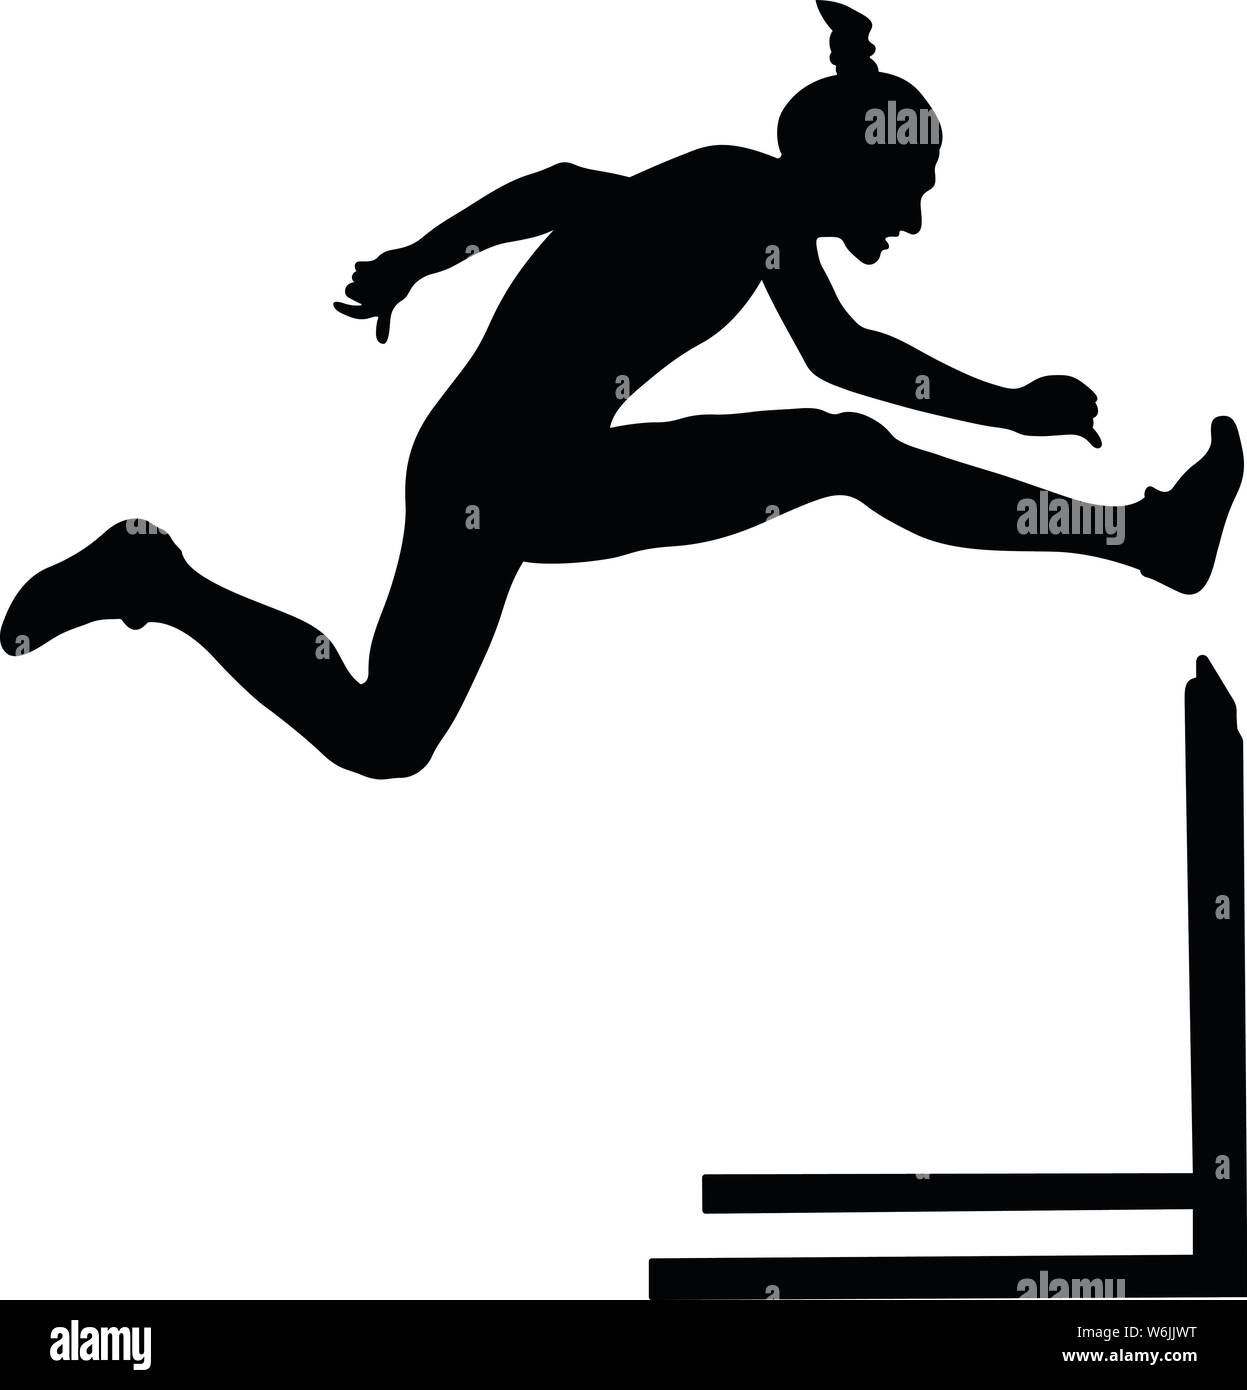 women athlete runner running hurdles attack black silhouette Stock Vector